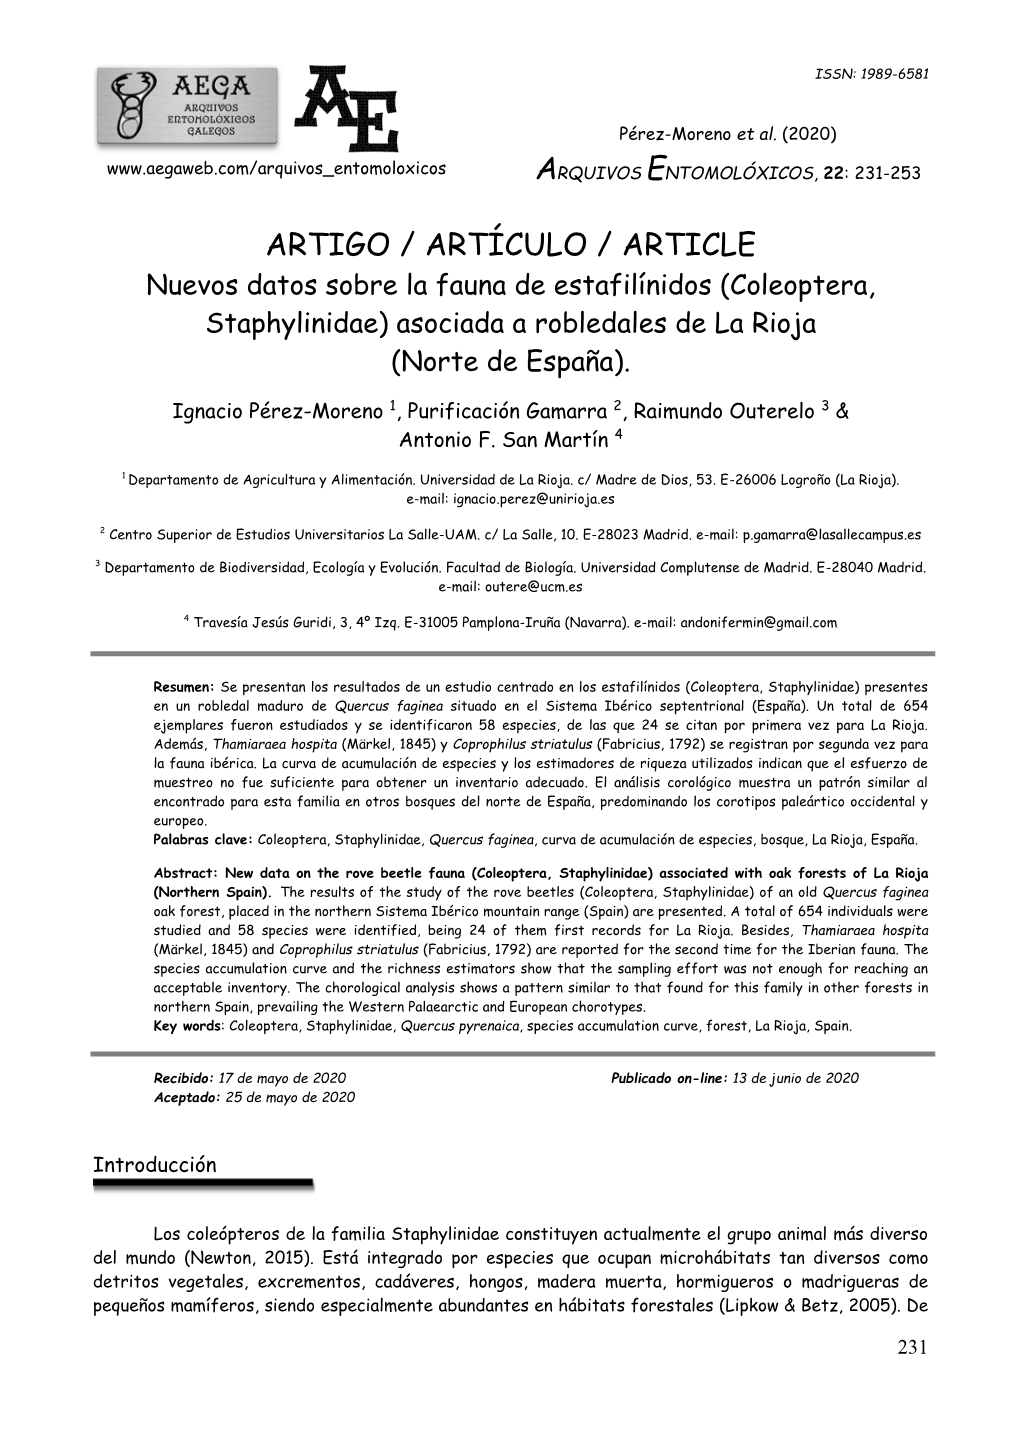 ARTIGO / ARTÍCULO / ARTICLE Nuevos Datos Sobre La Fauna De Estafilínidos (Coleoptera, Staphylinidae) Asociada a Robledales De La Rioja (Norte De España)